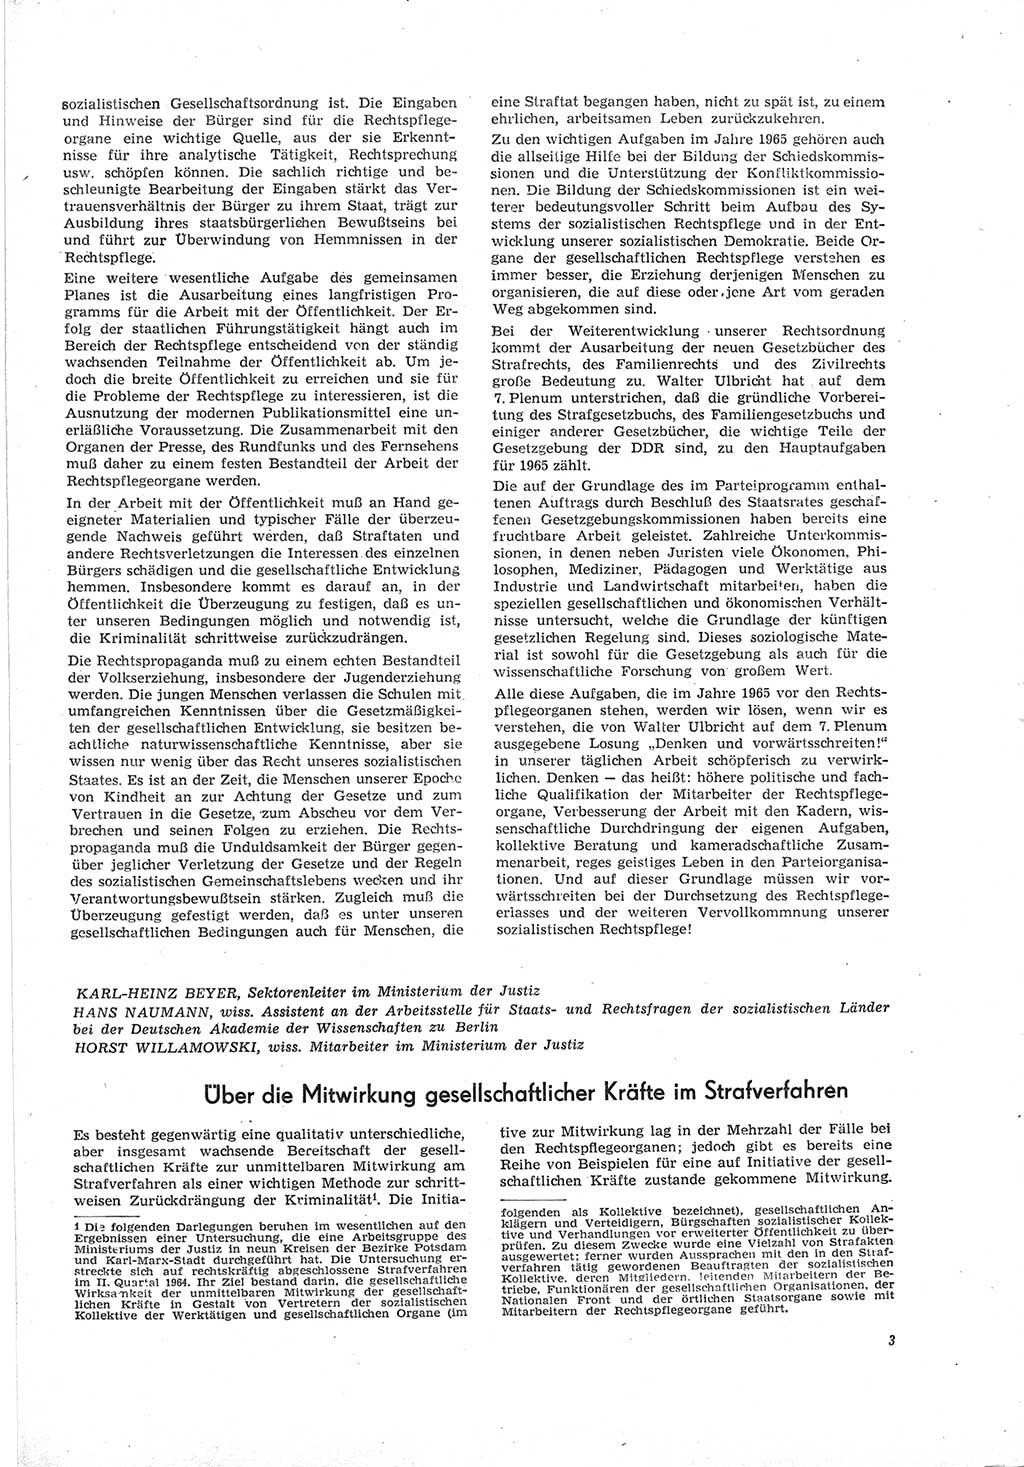 Neue Justiz (NJ), Zeitschrift für Recht und Rechtswissenschaft [Deutsche Demokratische Republik (DDR)], 19. Jahrgang 1965, Seite 3 (NJ DDR 1965, S. 3)